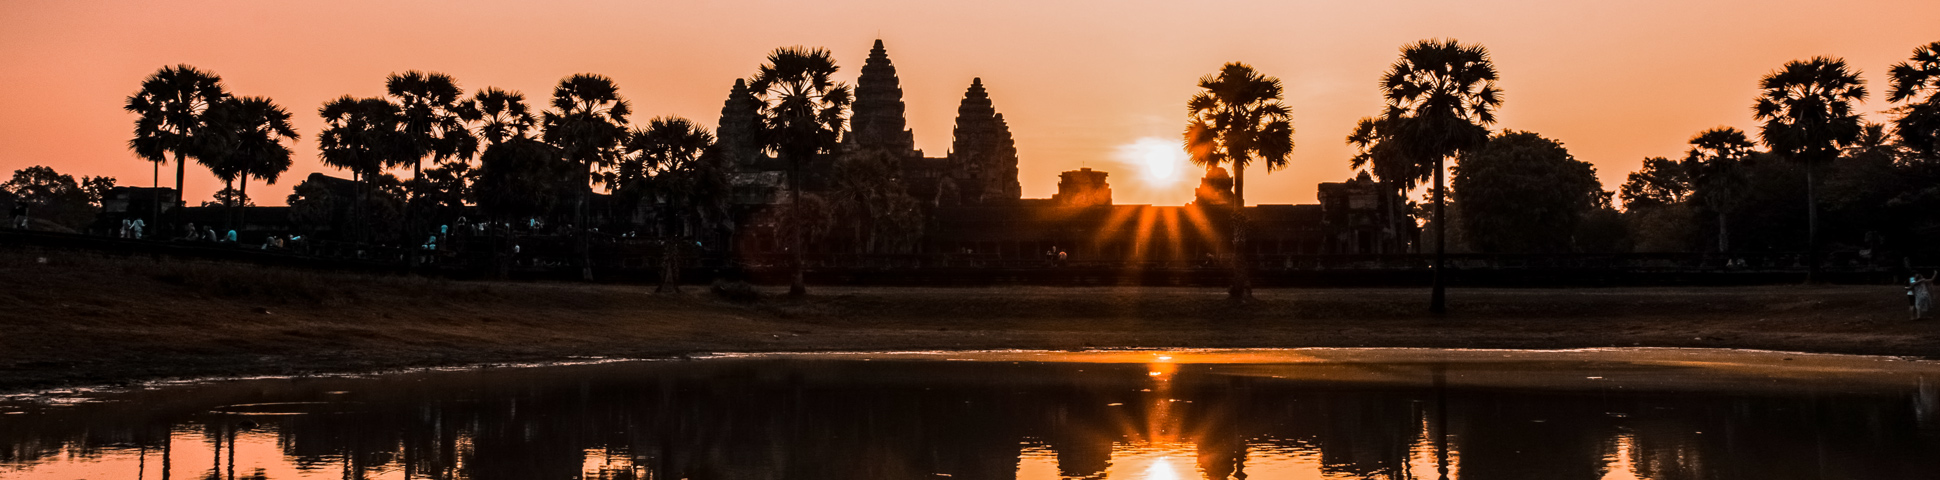 Phnom Penh to Angkor Wat Cycling Tour